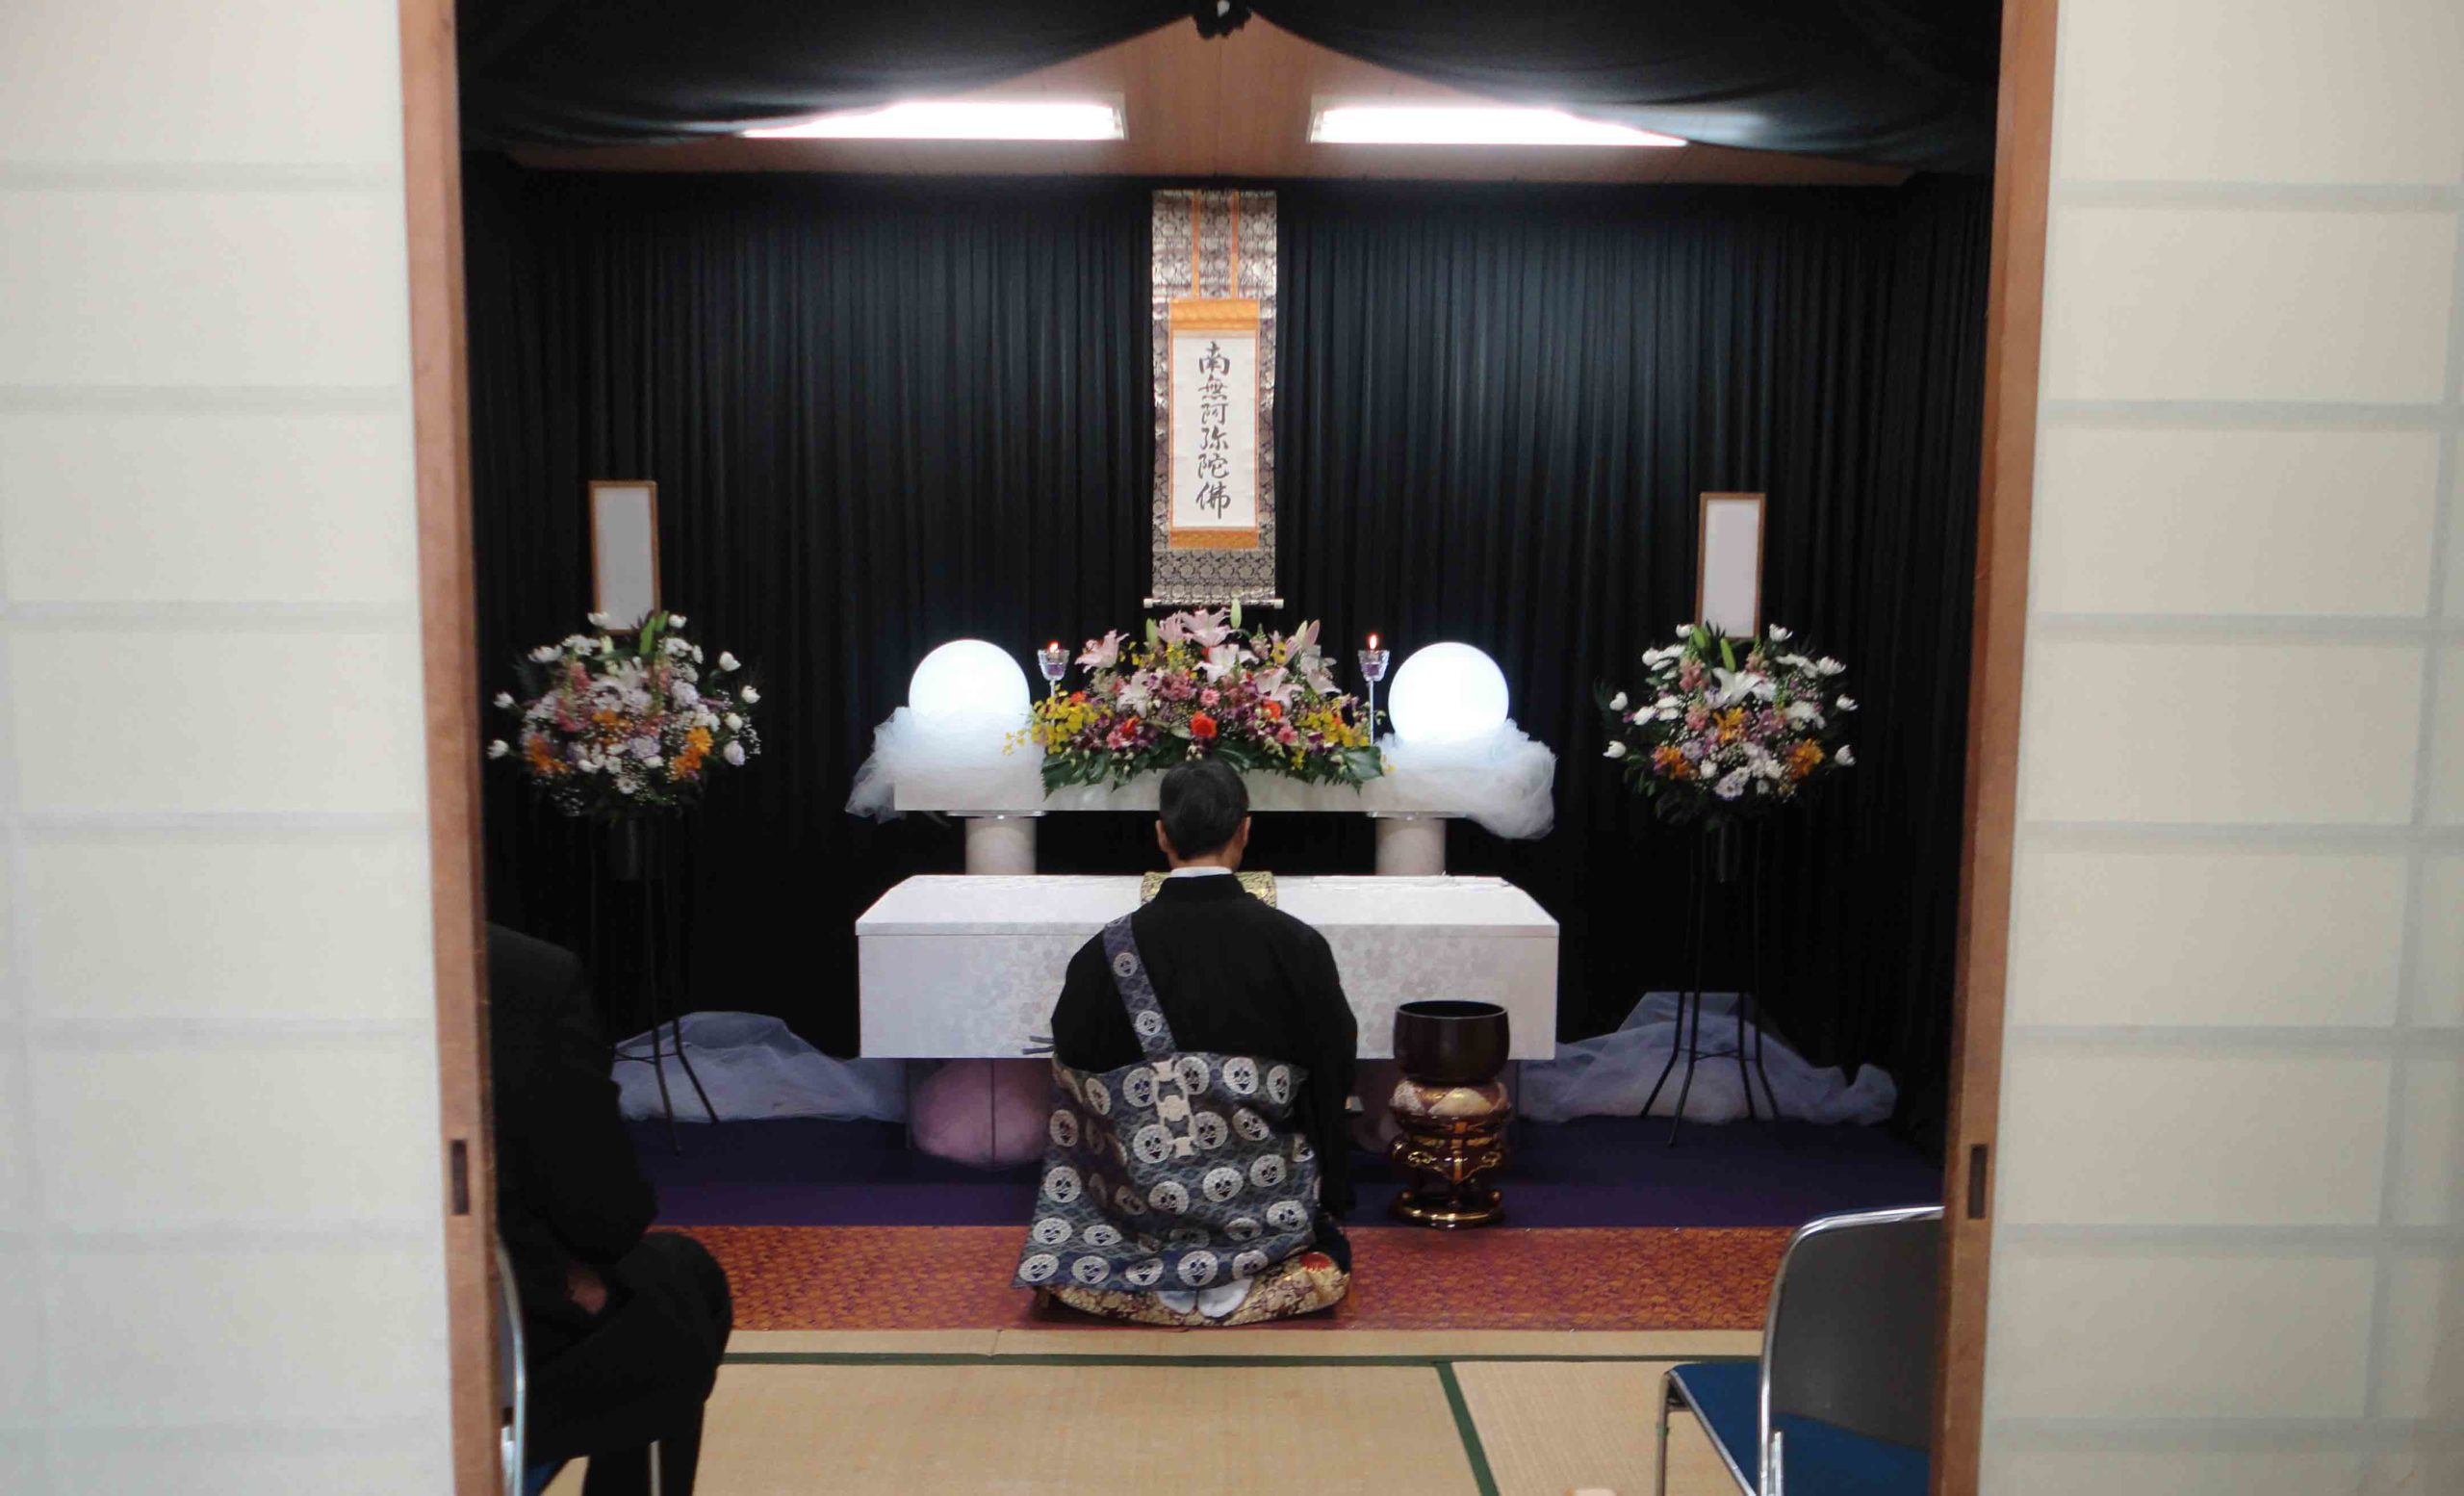 大阪市阿倍野区で生活保護受給者の方のお葬式を福祉葬としてお手伝い致しました。葬儀費用の実例・小林斎場での福祉葬儀の実例をご紹介致します。